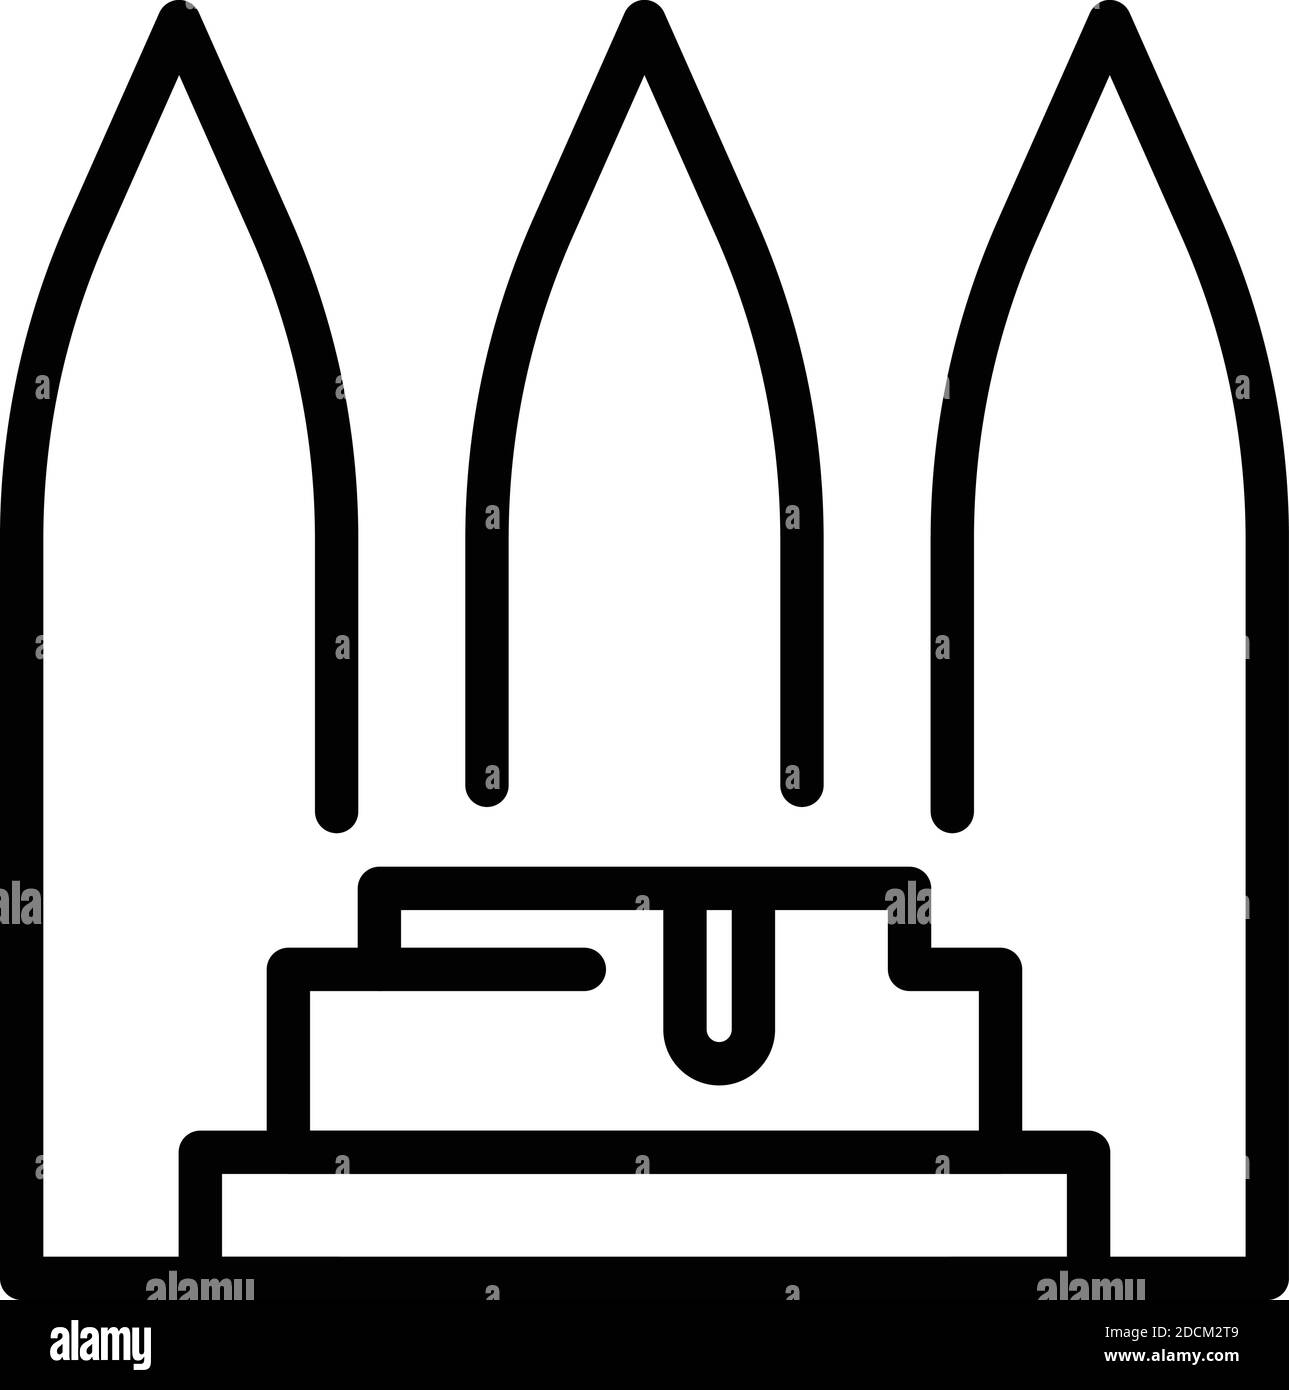 Türkisches Bad Hammam Ikone. Umriss türkisches Bad Hamam Vektor-Symbol für Web-Design isoliert auf weißem Hintergrund Stock Vektor